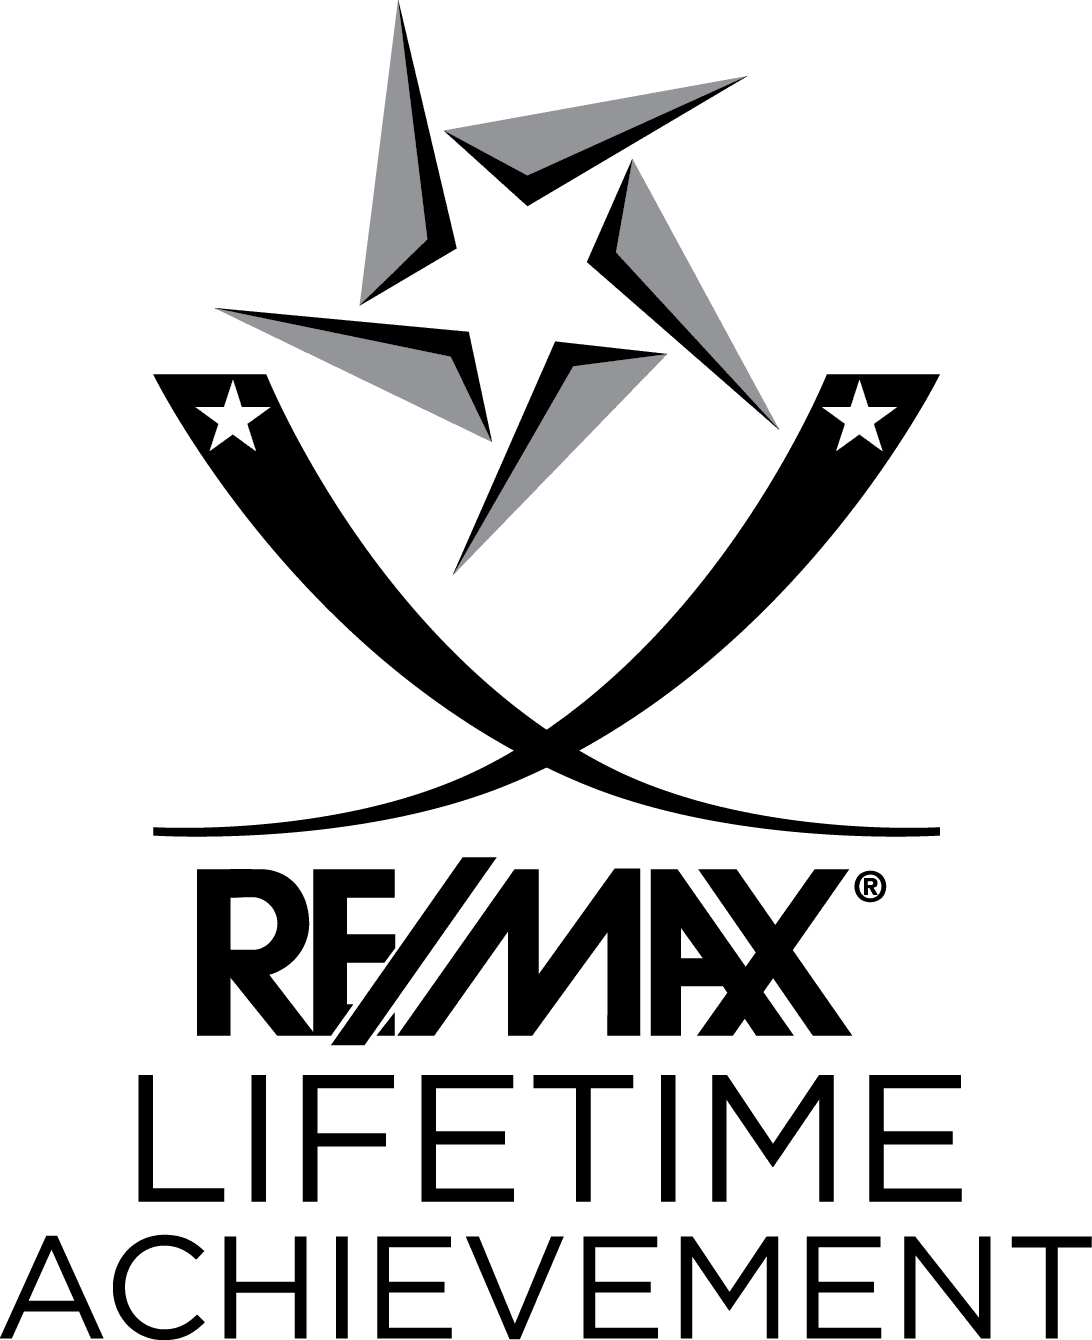 RE/MAX Lifetime Achievement Award